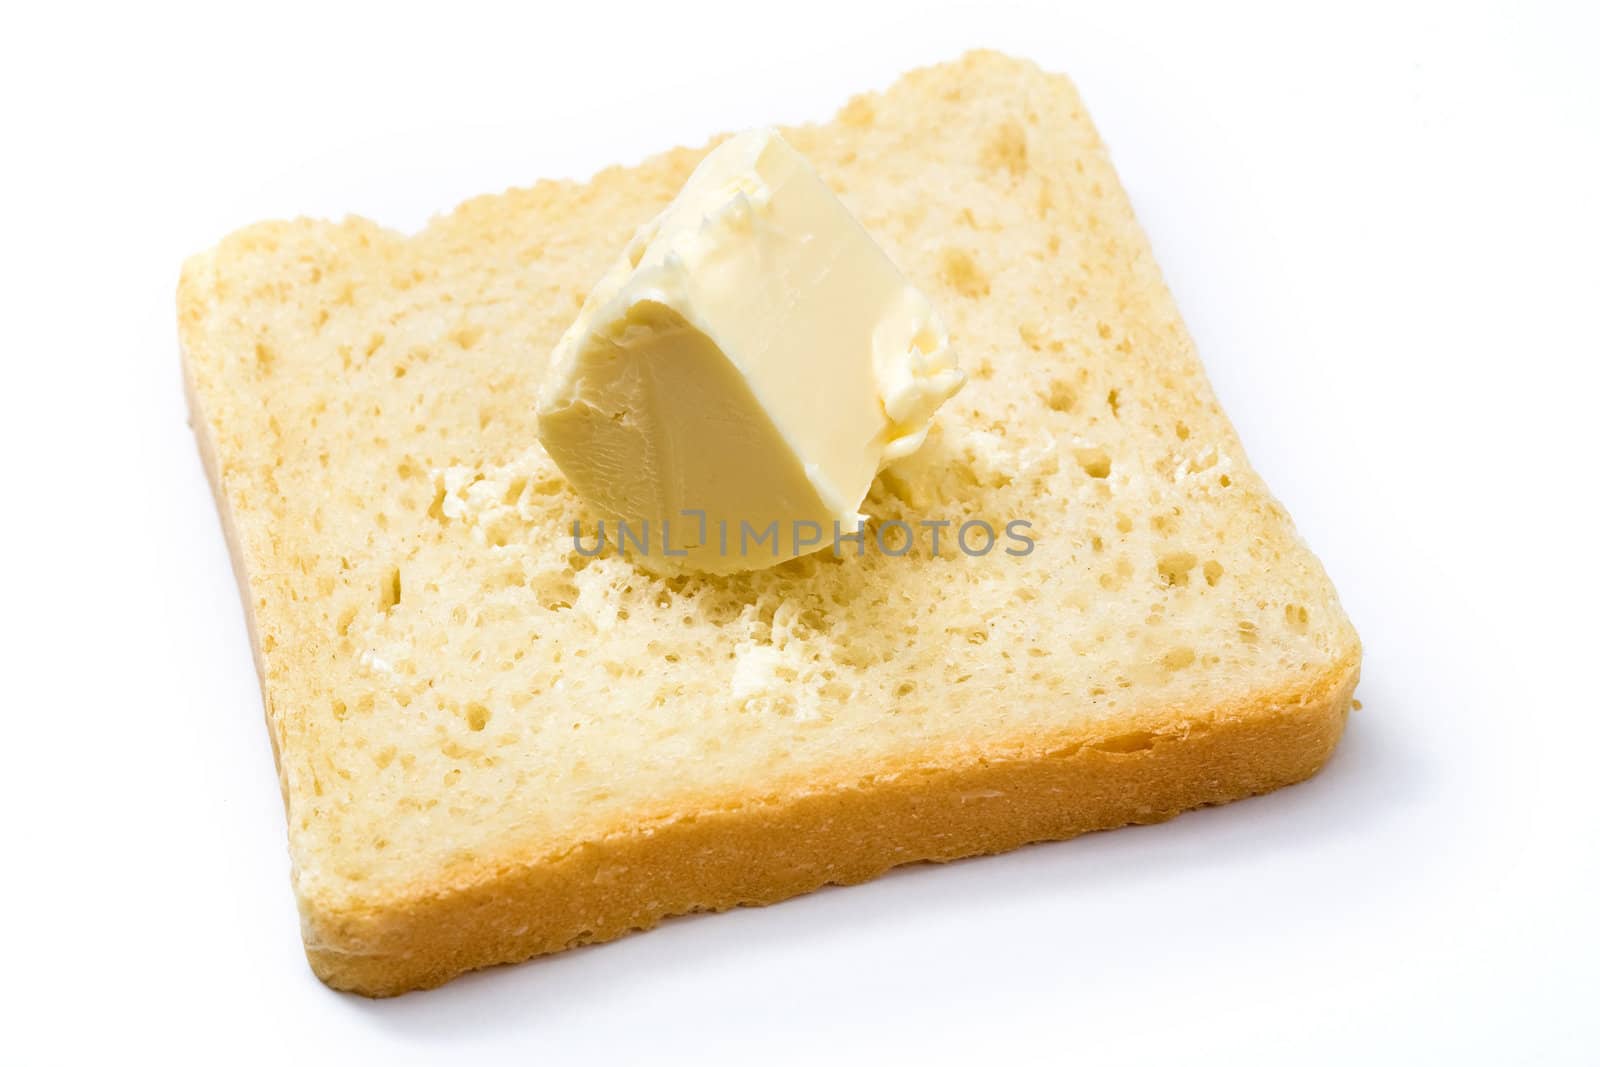 Butter on bread by velkol